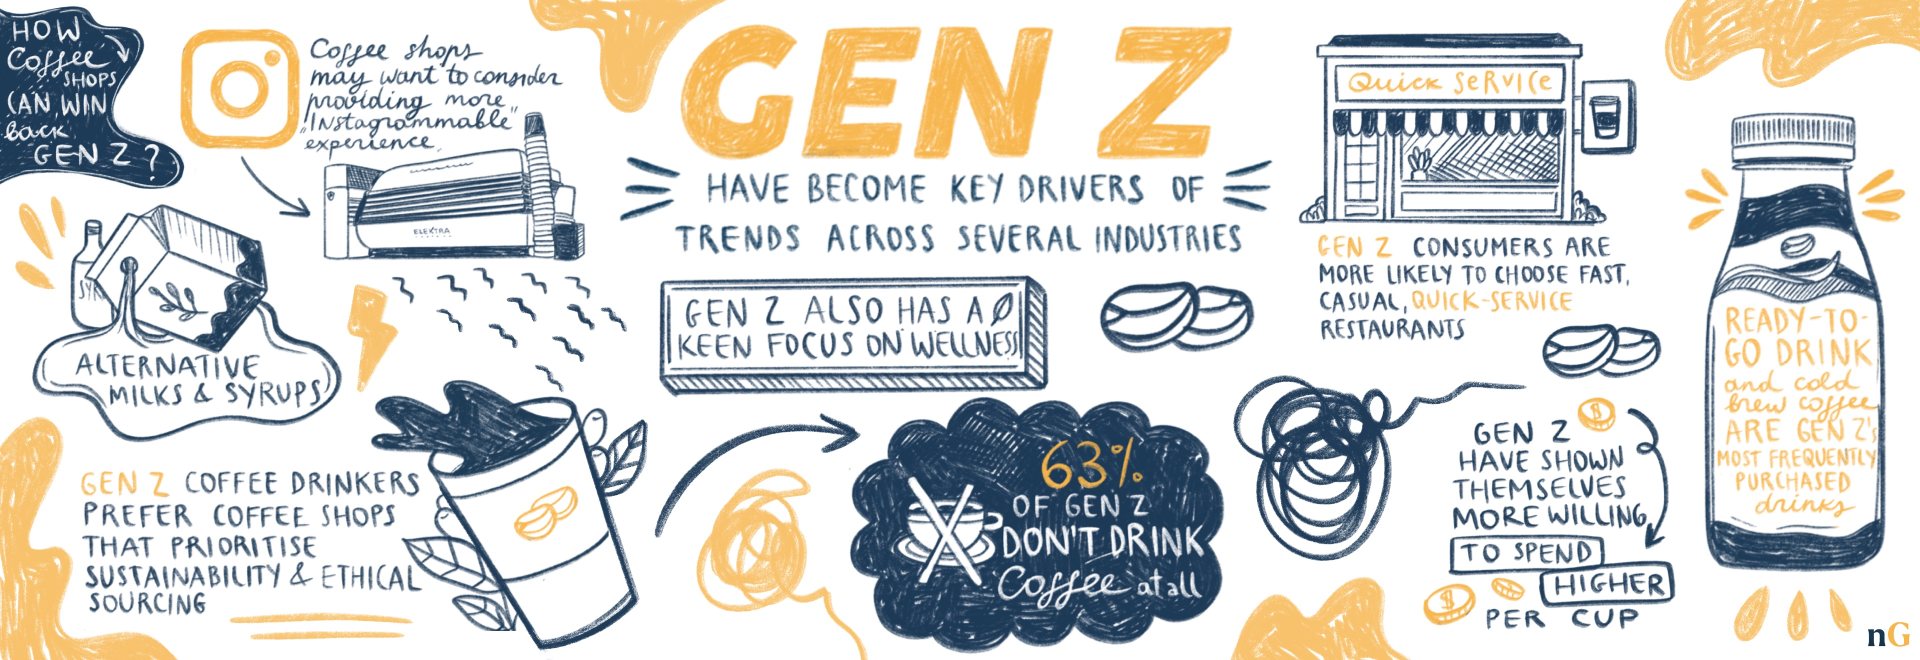 gen z coffee trends